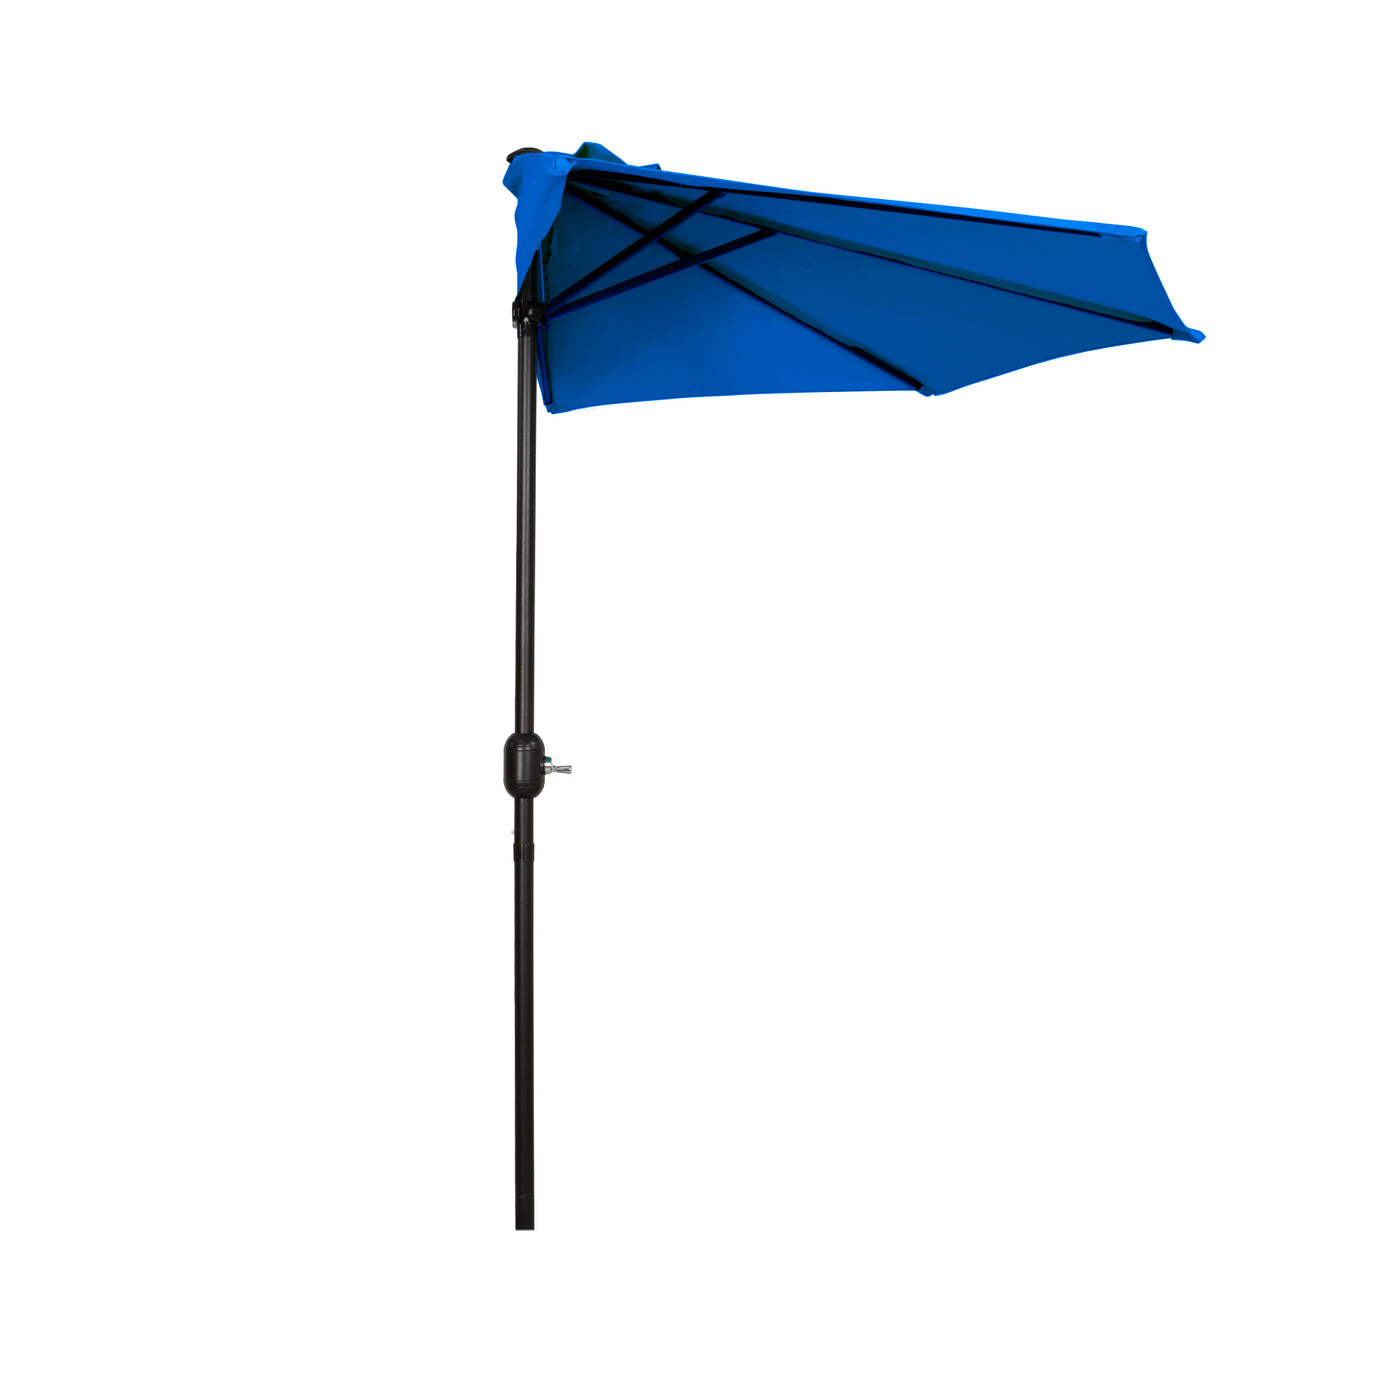 Aiden 9 Ft Outdoor Patio Half Market Umbrella with Half Base